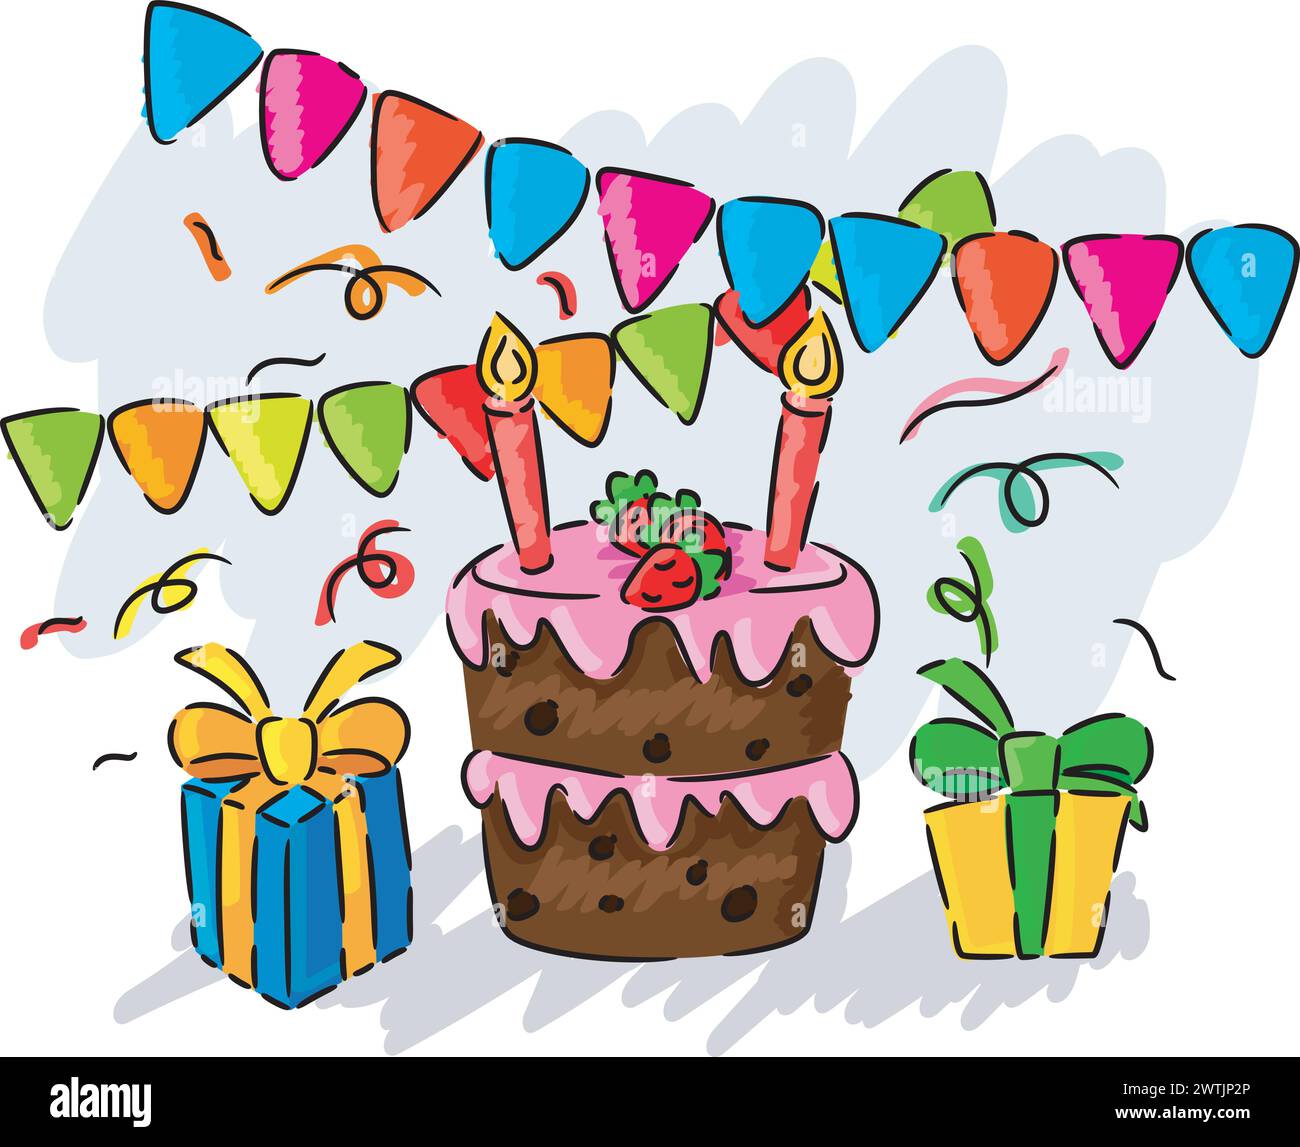 Geburtstagsparty Handzeichnung Kinder, Vektor-Illustration Stock Vektor